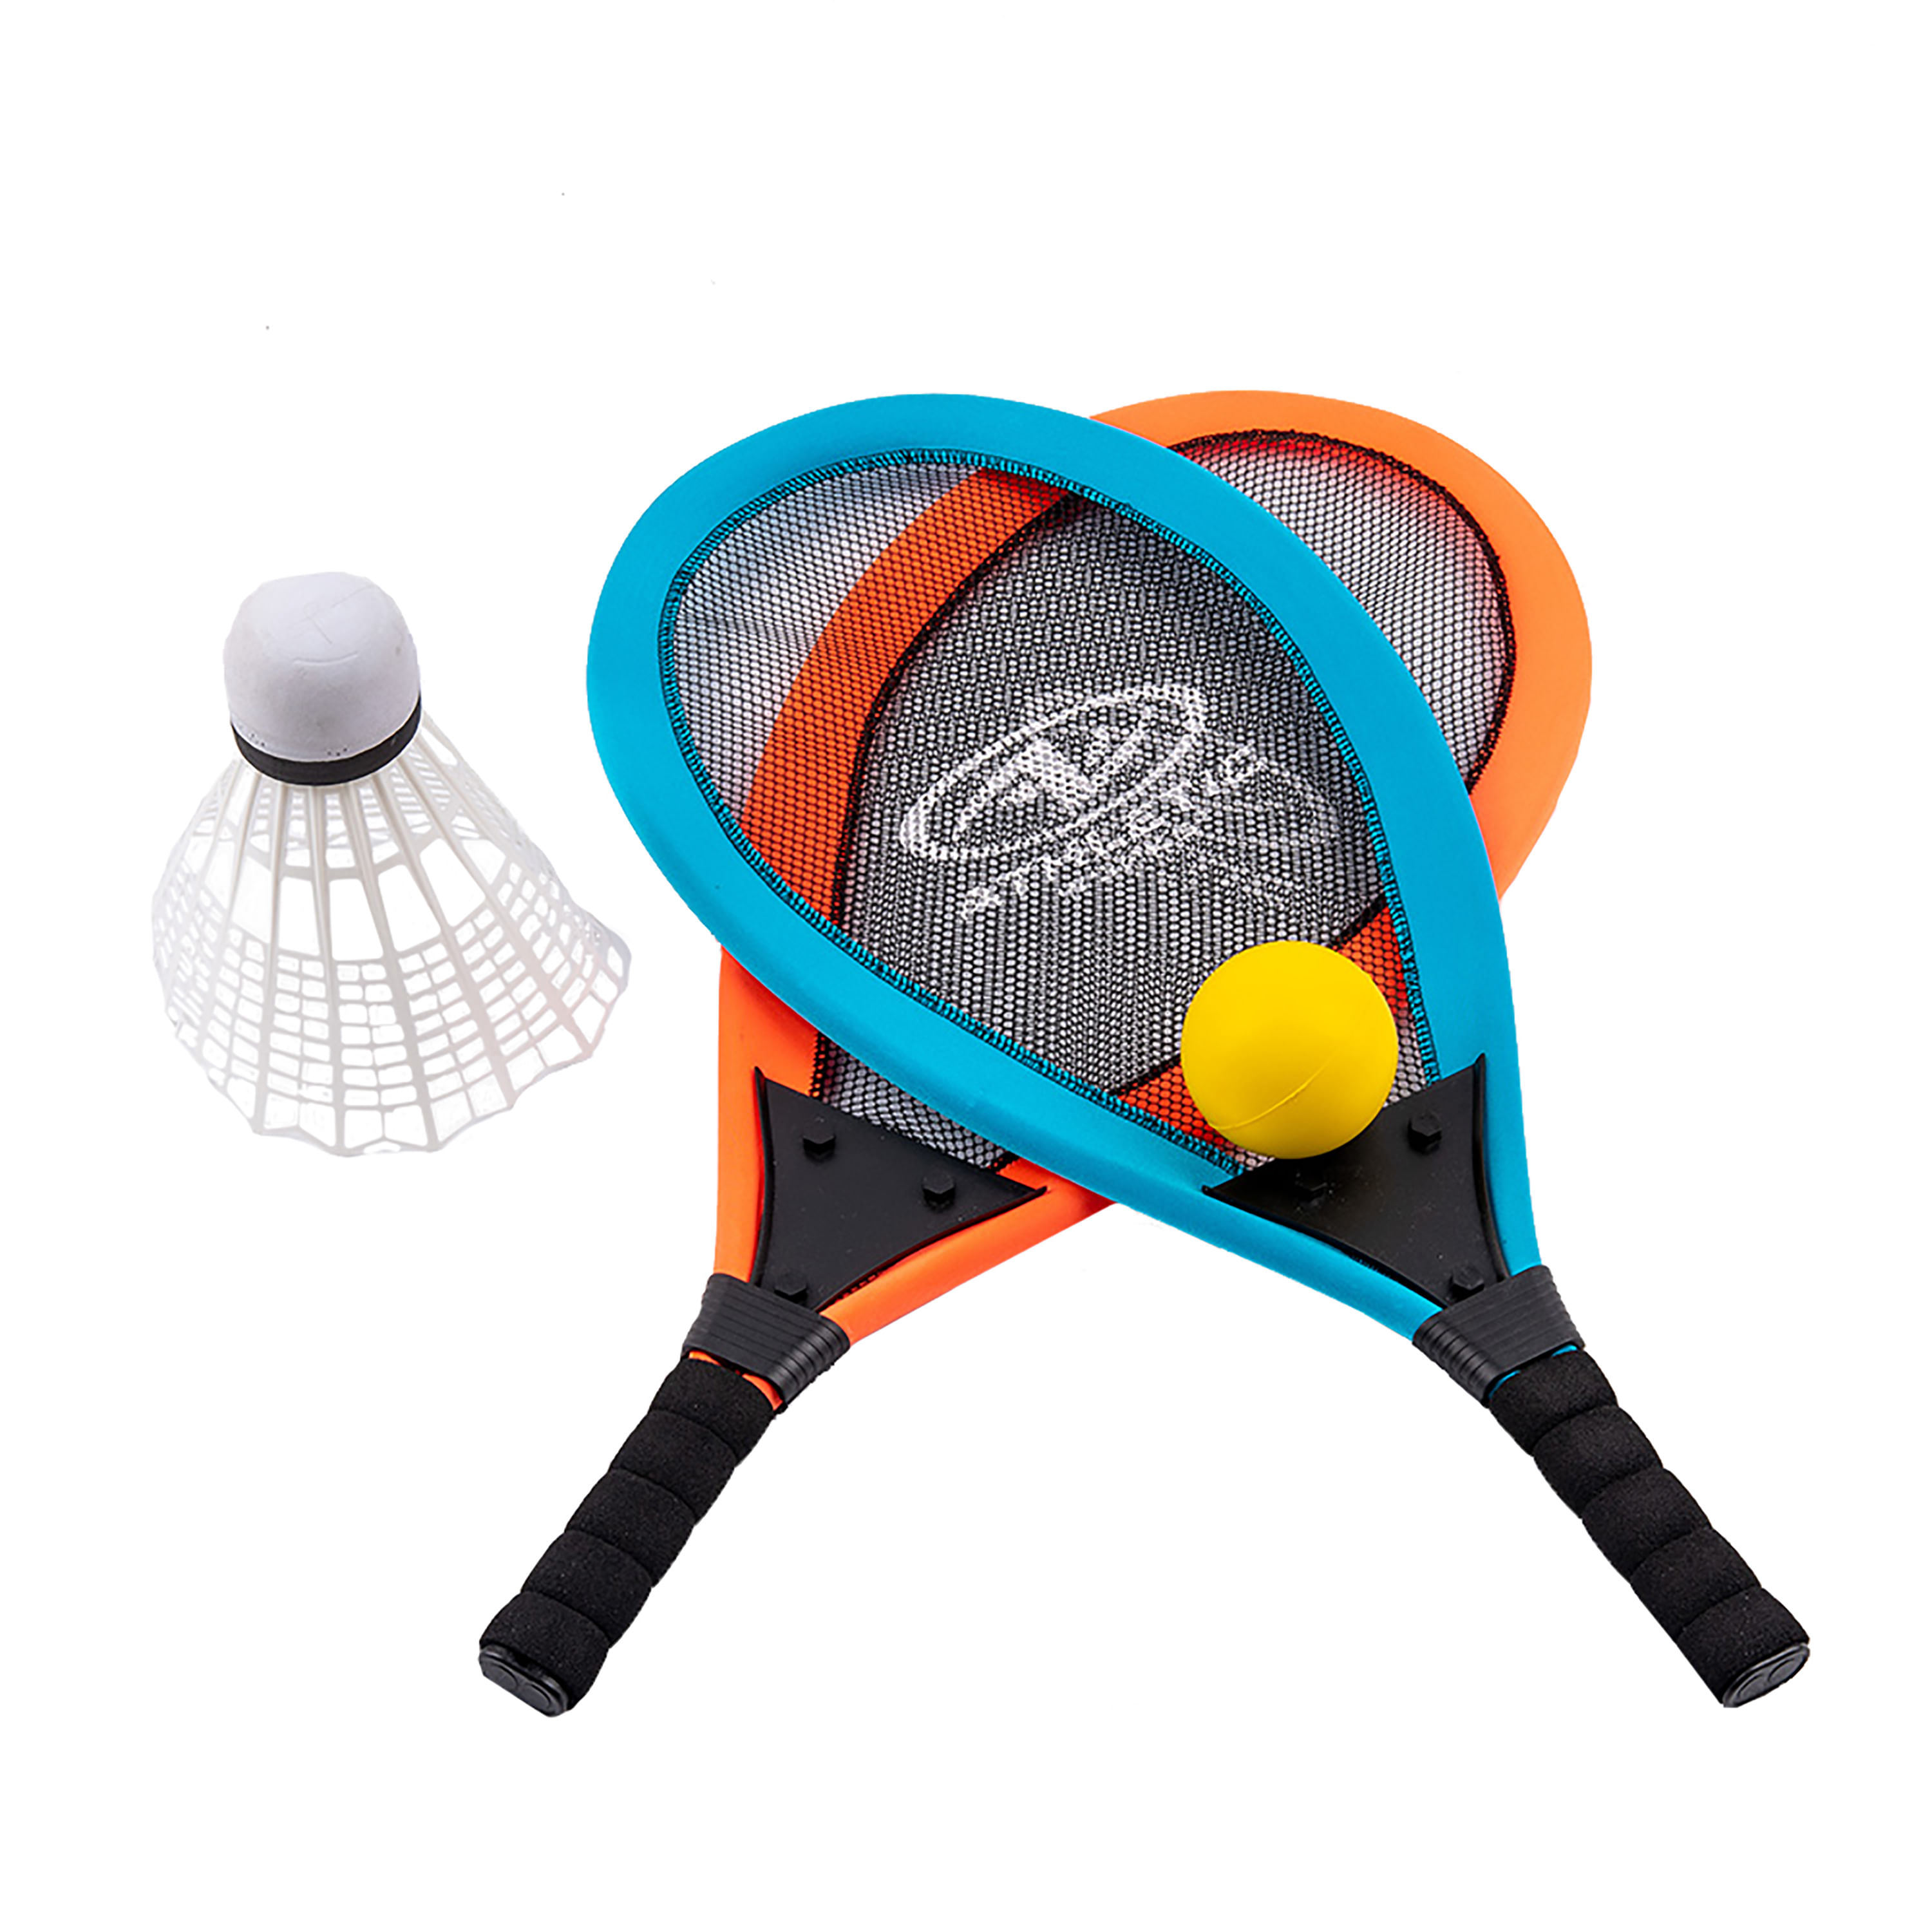 Nassau - Juego de raquetas de bádminton para 2 jugadores, raquetas dobles  de carbono con eje de carbono, juego de raqueta de bádminton 6ea + 1 bolsa